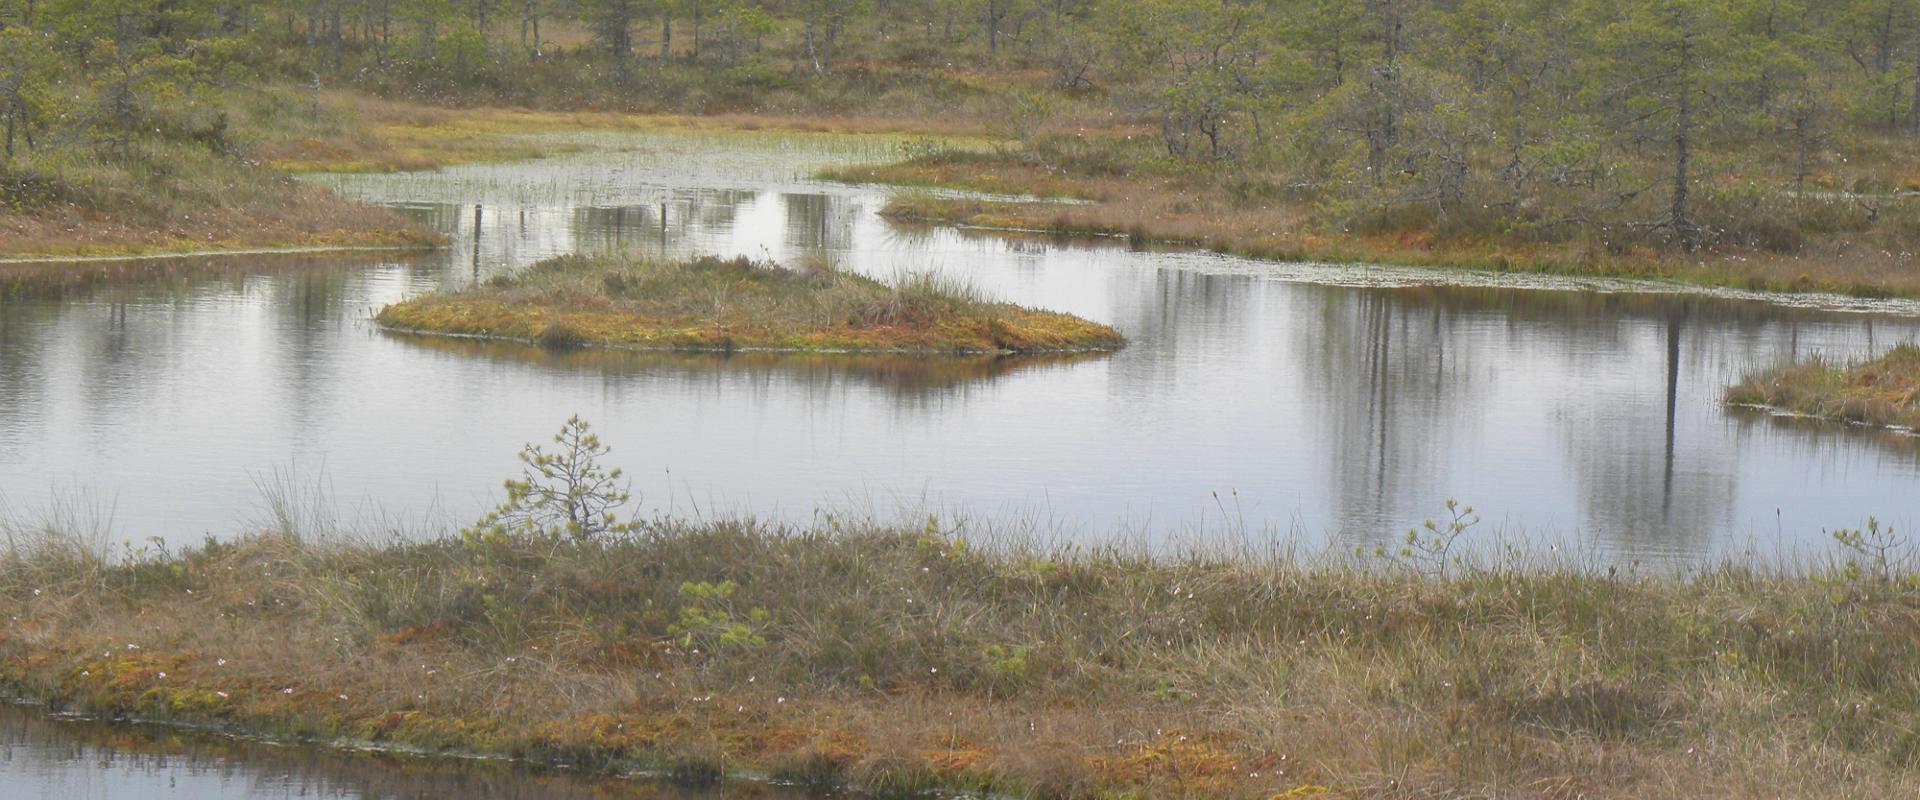 Naturschutzgebiet Endla und Zentrum in Tooma